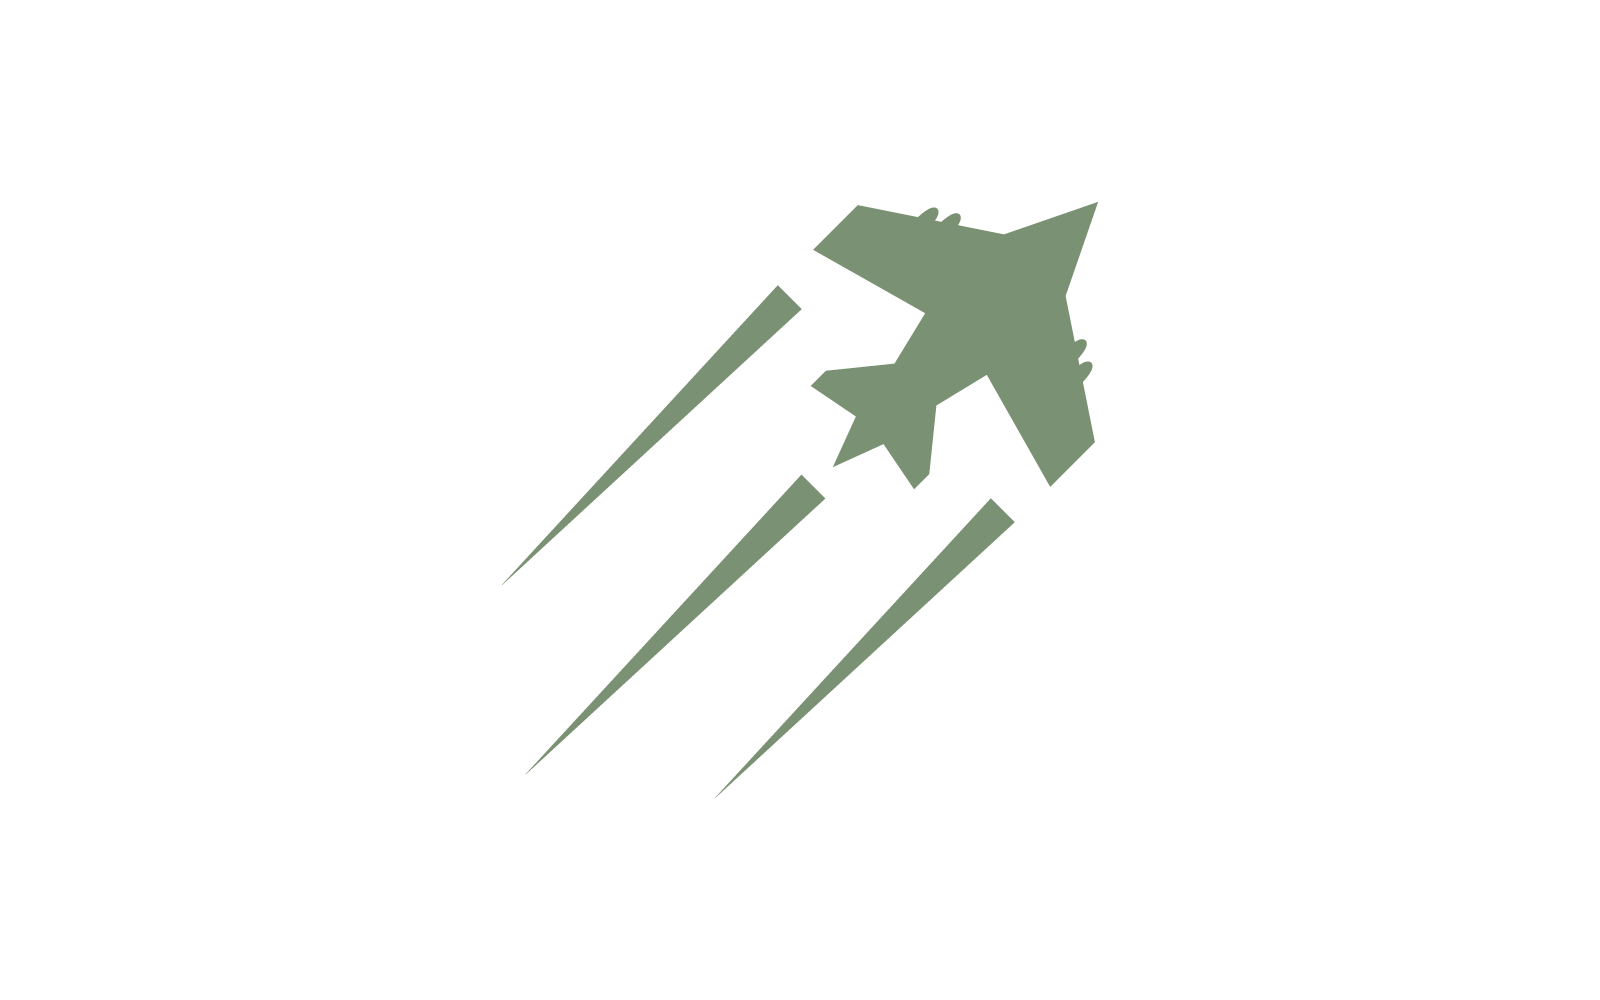 Diseño plano del vector del logotipo militar del avión de la fuerza aérea